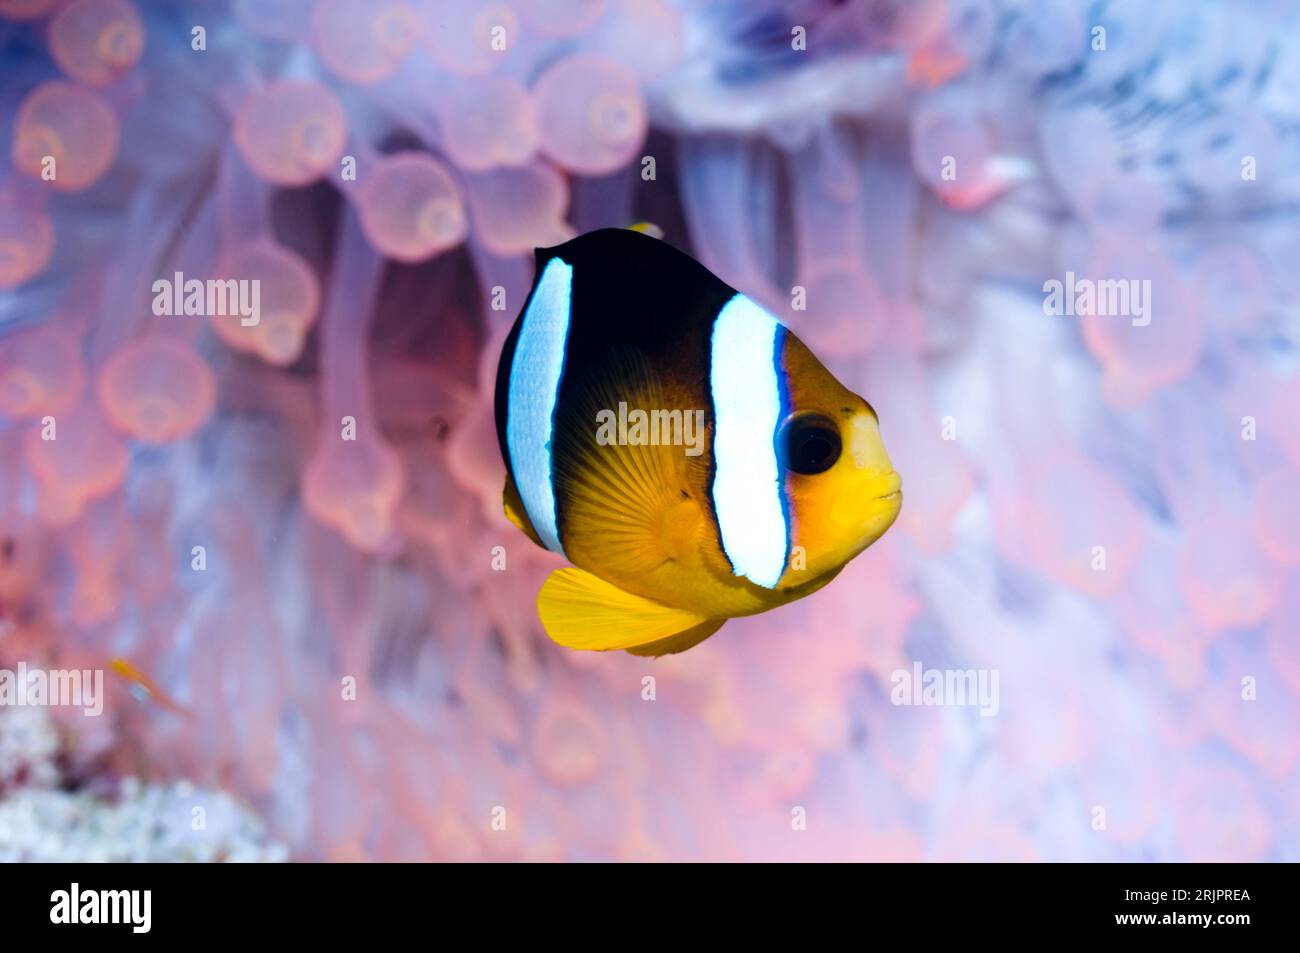 Anemonefish di Clark (Amphiprion clarkii) in anemone a punta di bolla (Entacmaea quadricolor). Fluorescente arancione/rosso. I tentacoli sono di solito un fratello noioso Foto Stock